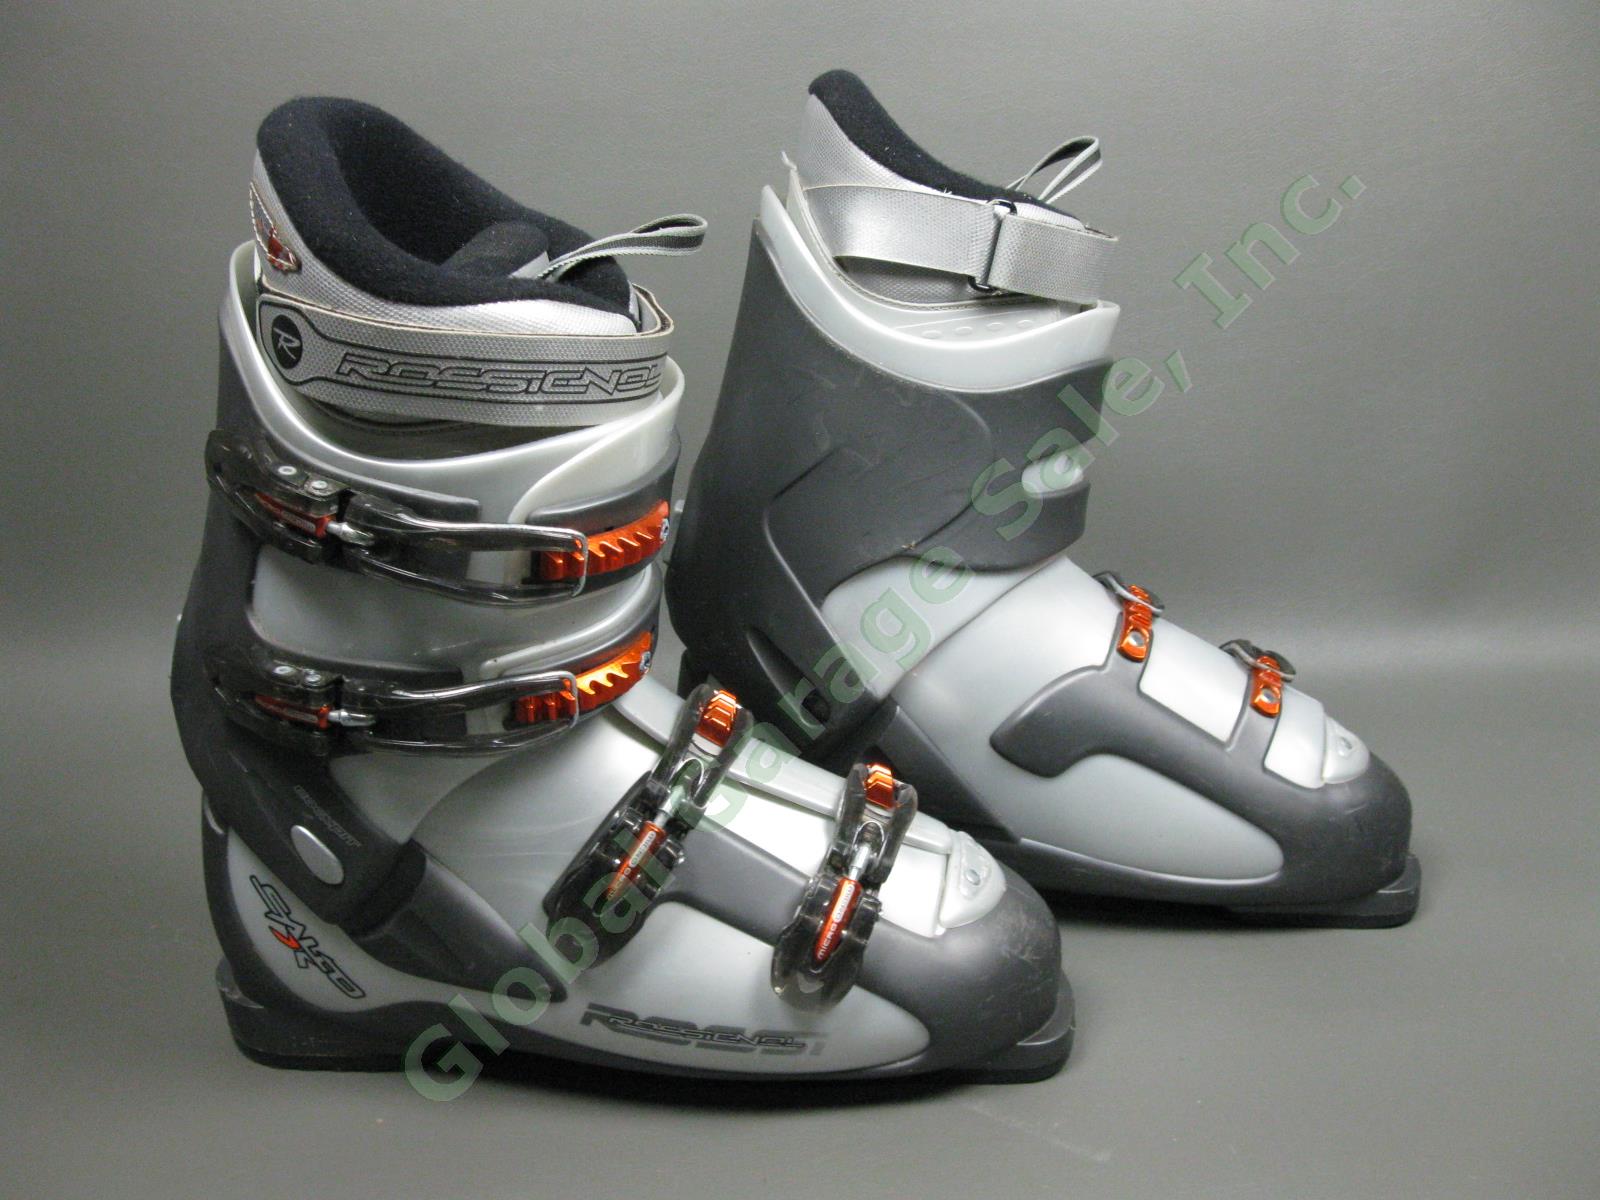 Rossignol Salto X Cockpit Orange/Silver Ski Boots Size 30.5 EUR/13 US/12 UK NR! 9